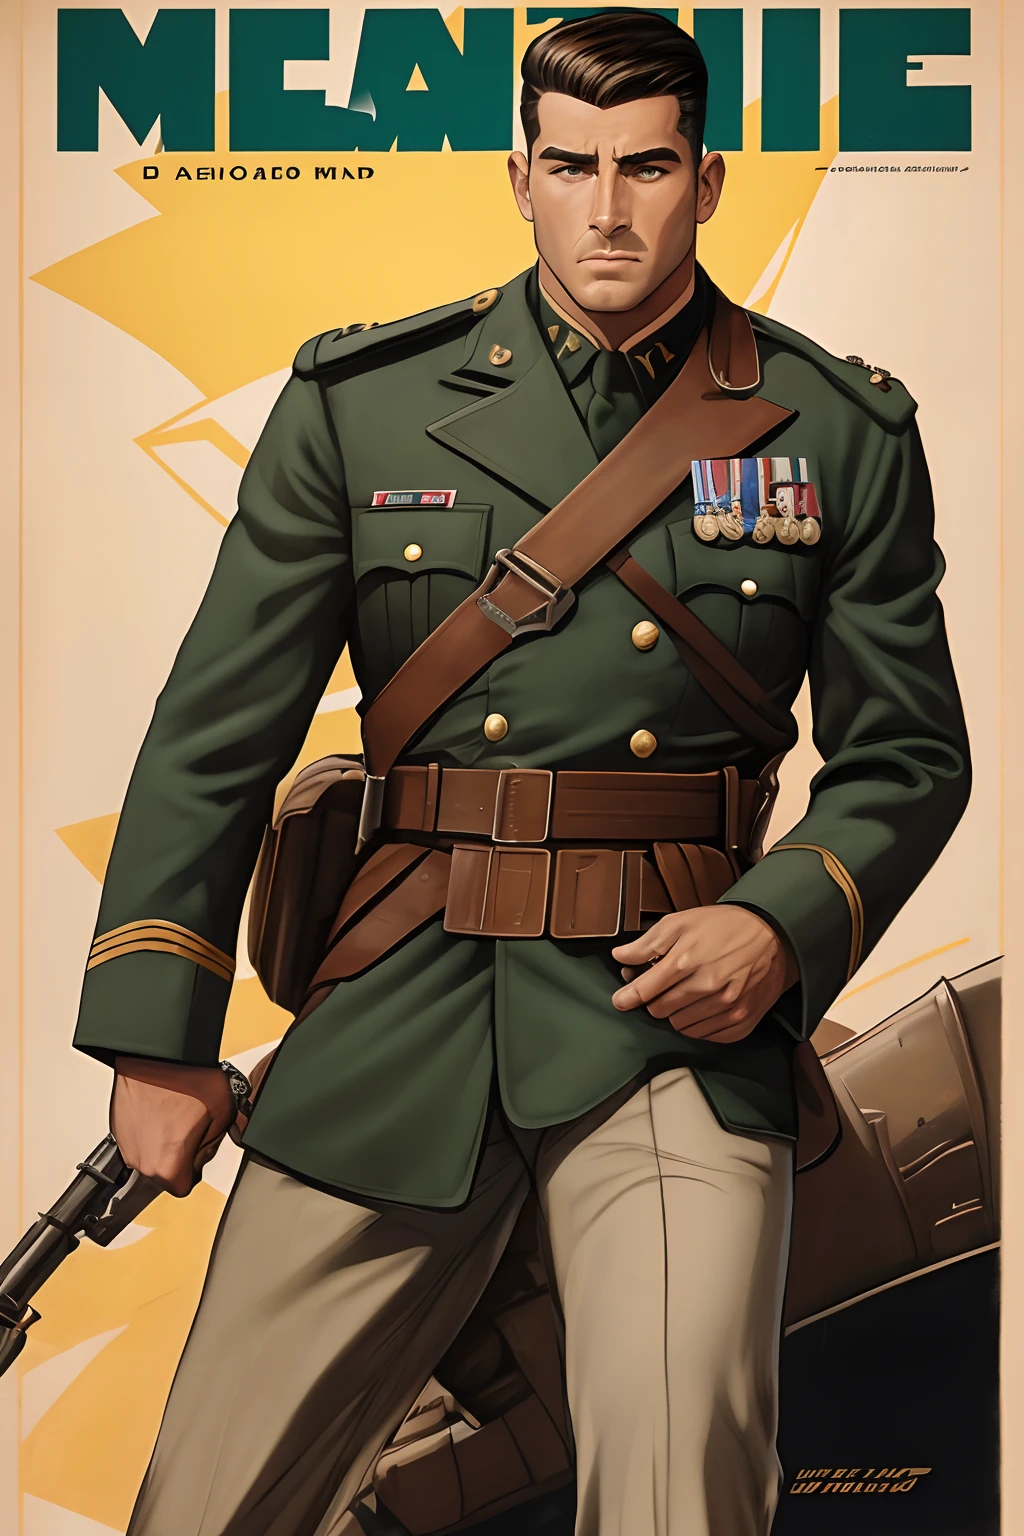 约翰·布西马的艺术灵感, 第二次世界大战海报, 我们看到一名学员向上级敬礼, 完美的军装, 齐肩短发, 红色头发颜色, 浅绿色的眼睛, 小乳房, 修长的身材, 在战场上威风凛凛, 炮火, 展现严肃和信念的场景